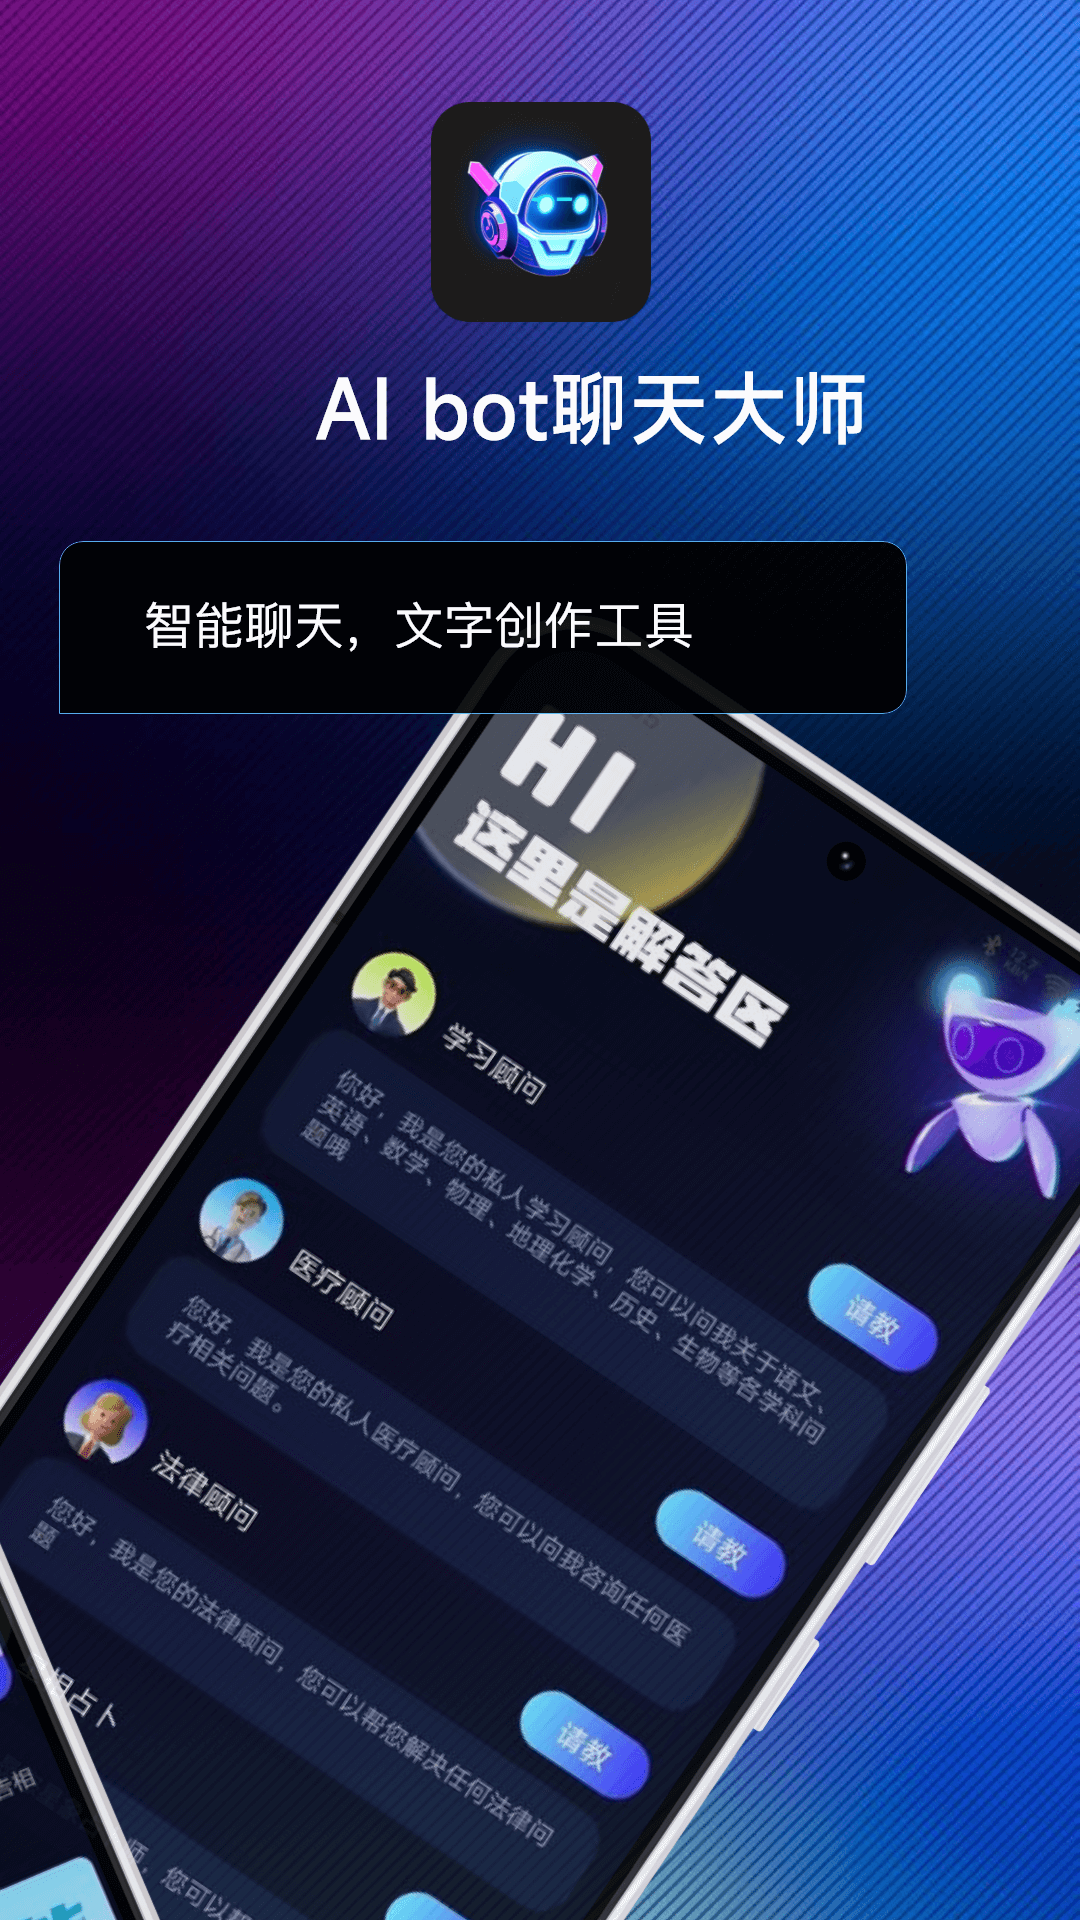 AI bot聊天大师app官方版 v1.0.1截图1